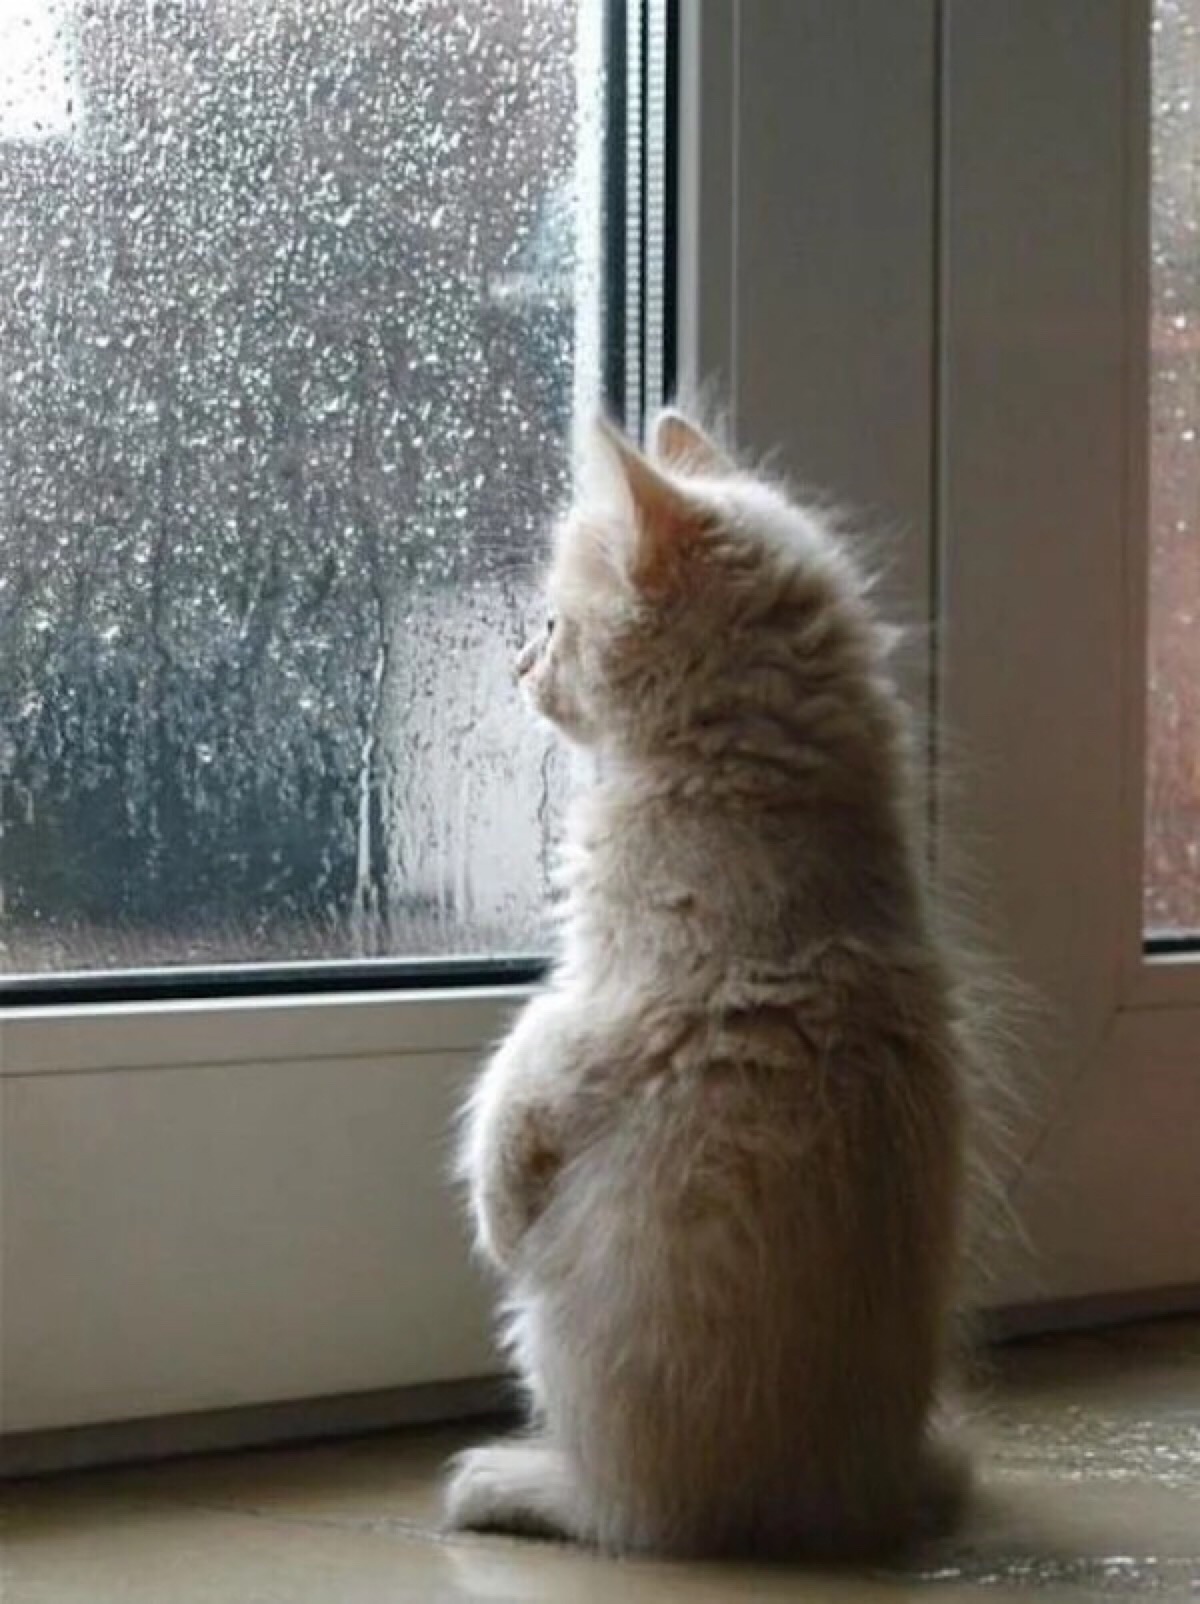 每当下雨,我都会静静的站在窗前思考人生.